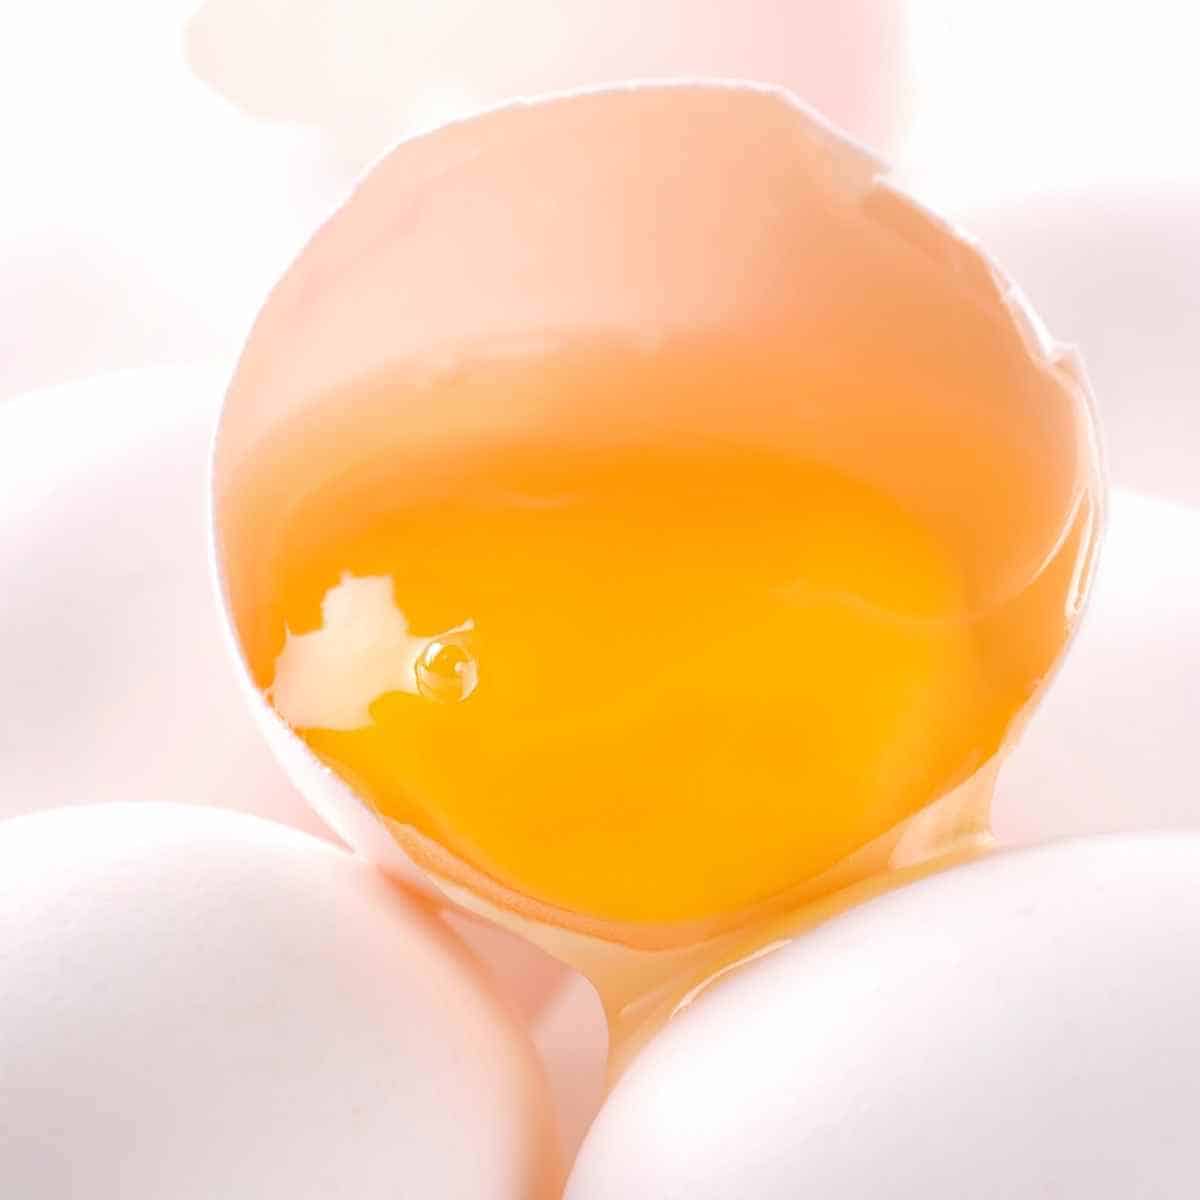 eggeplomme - Hvordan bli kvitt eggy-smaken i Keto-brød